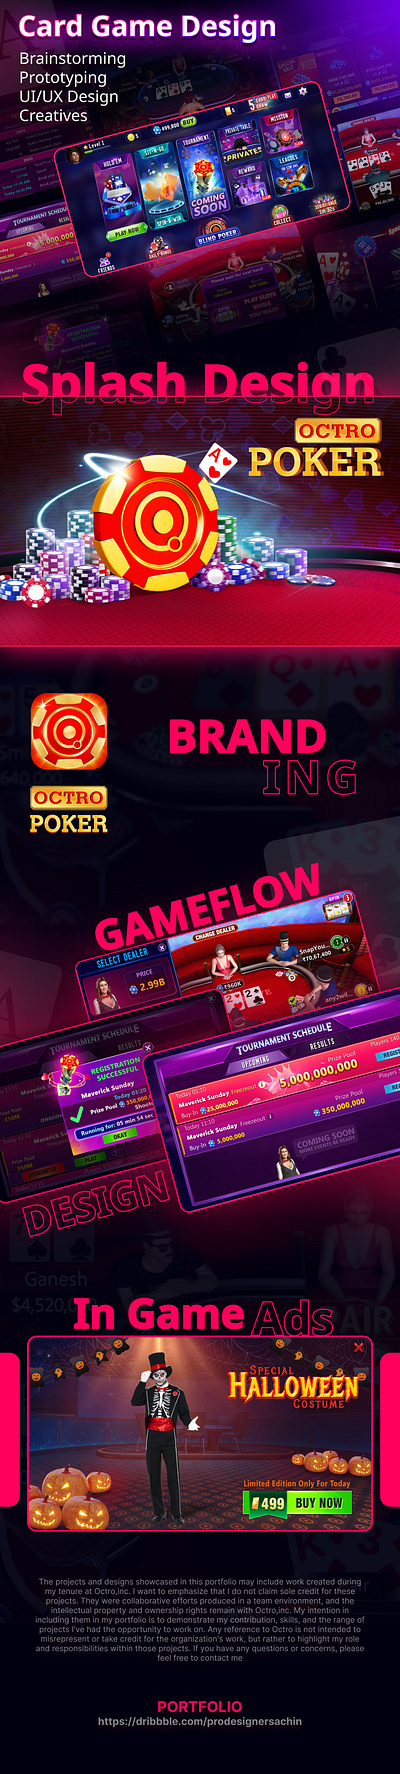 Poker Game UI/UX Design android ui design branding card game design design game game ui design graphic design poker poker game ui design ui design